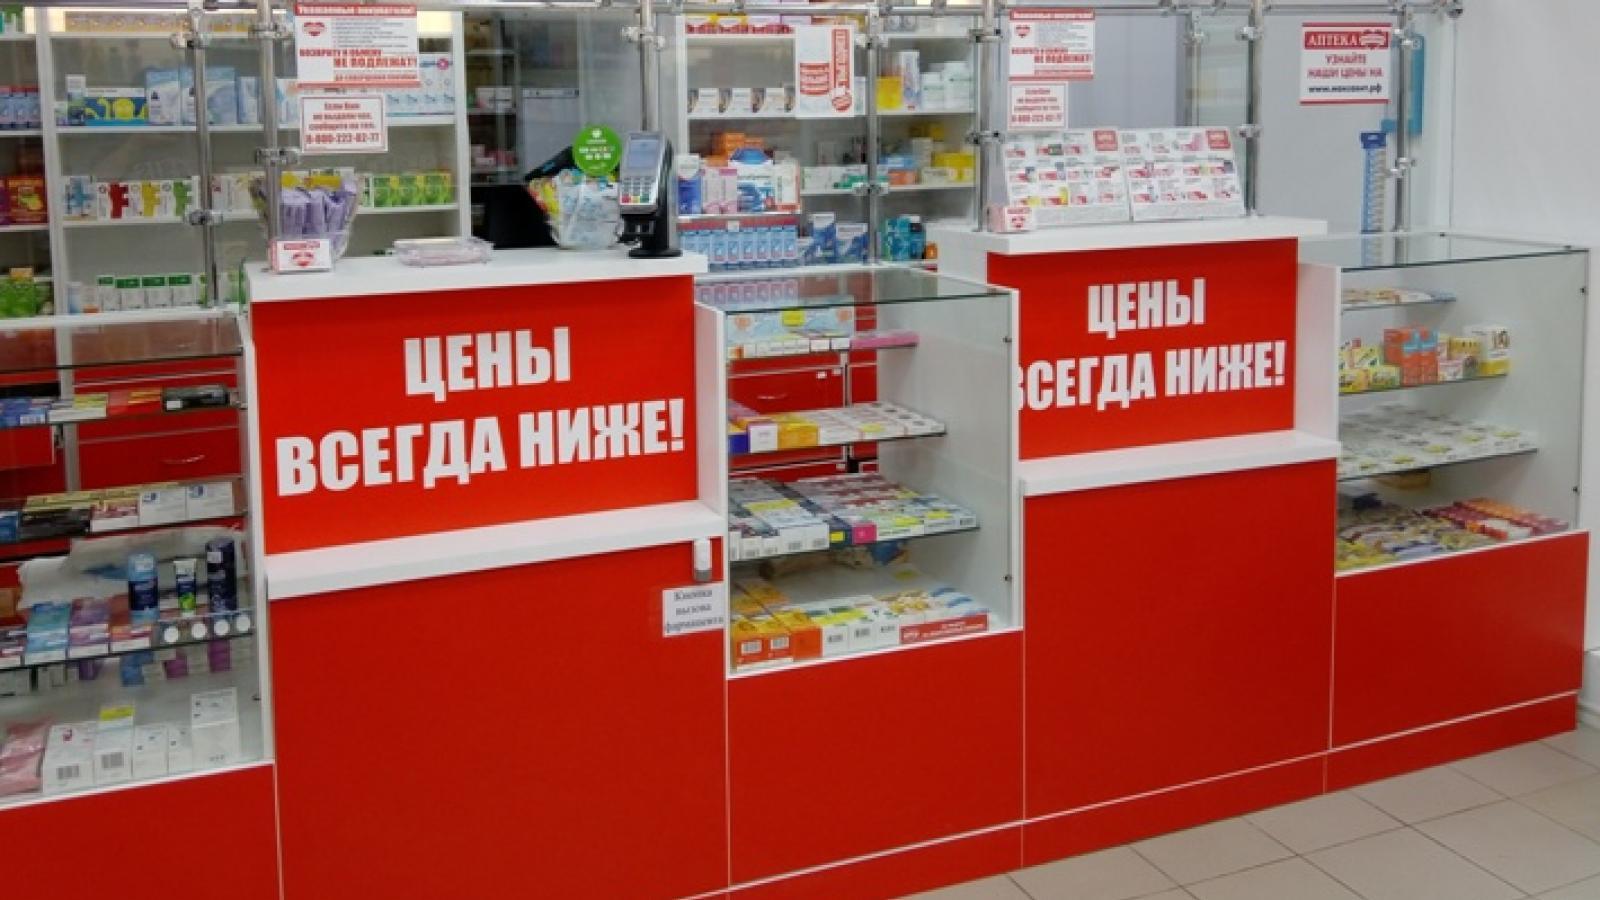 Аптечную сеть наказали за рекламные лозунги